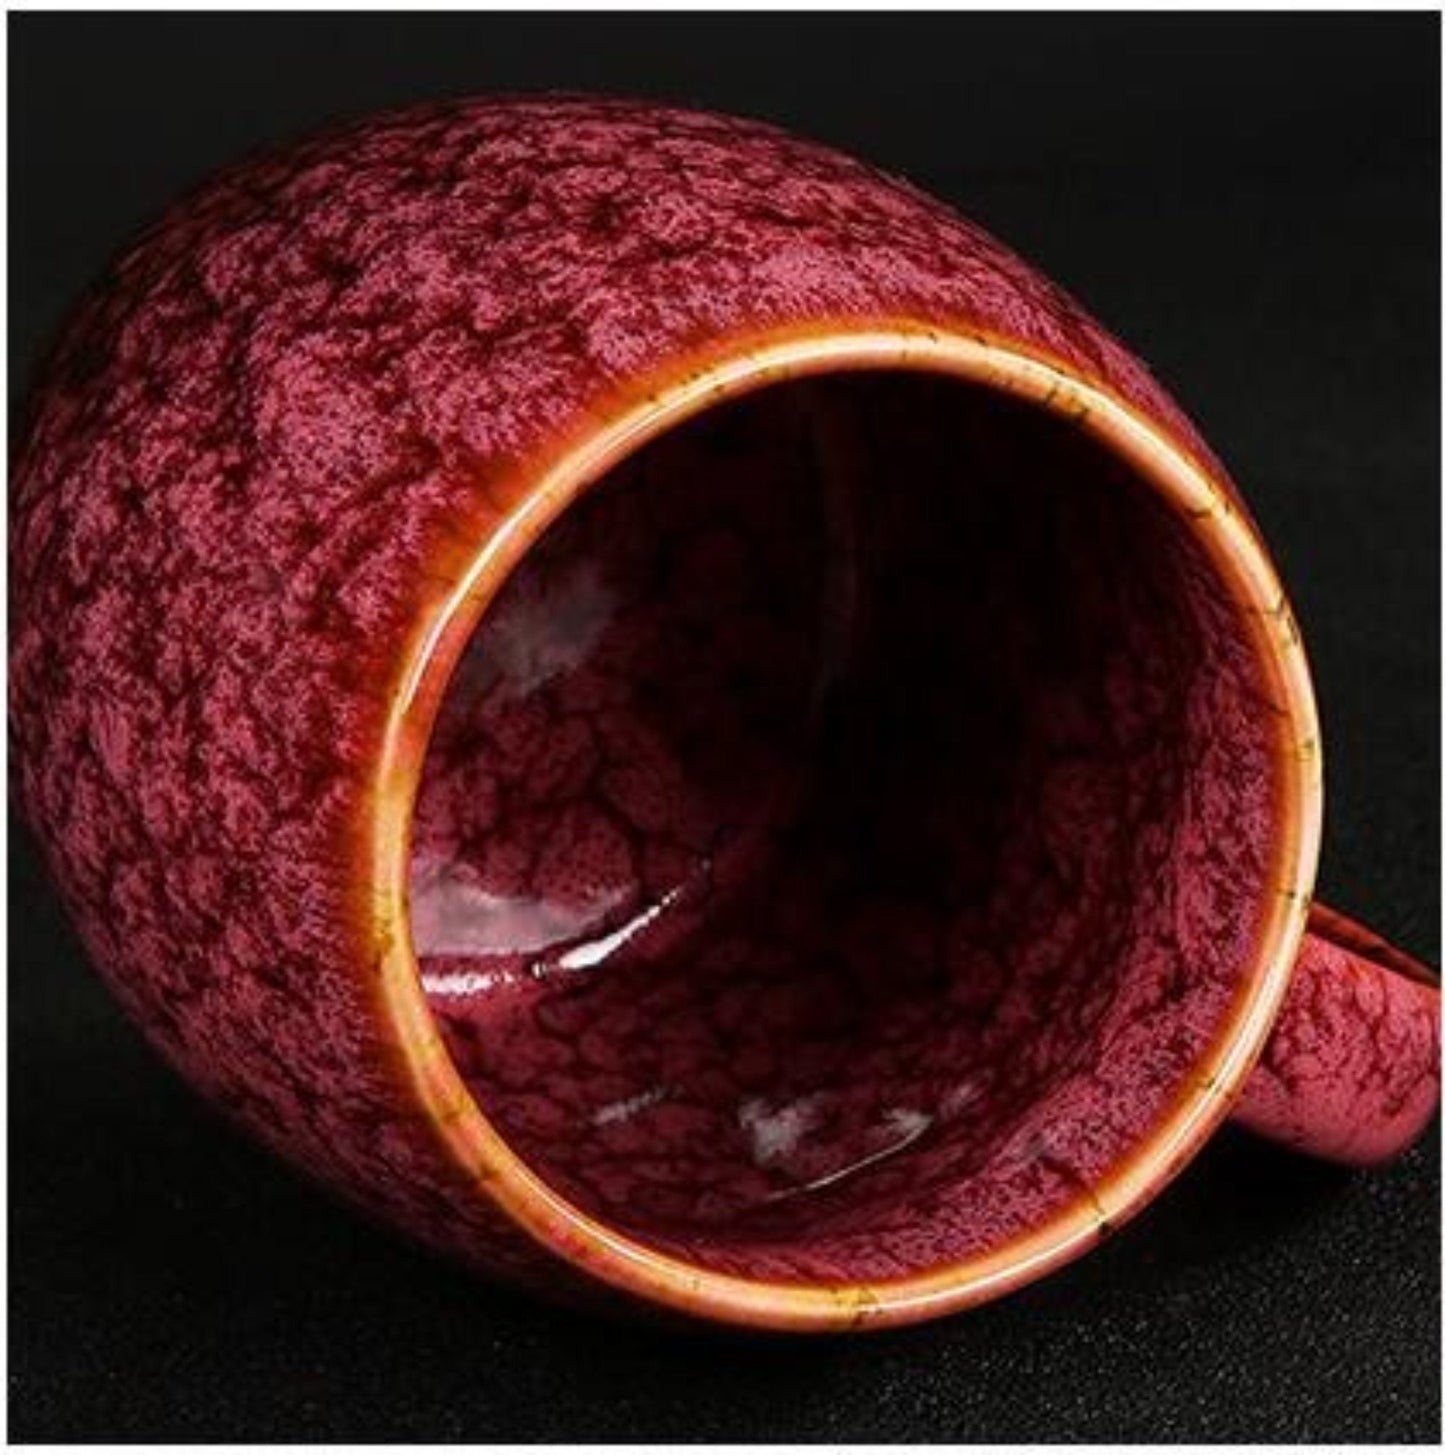 Taza de cerámica vintage 13.5oz | Taza de café grande, taza retro creativa, juego de tazas coloridas, taza esmaltada reactiva, taza de cerámica japonesa